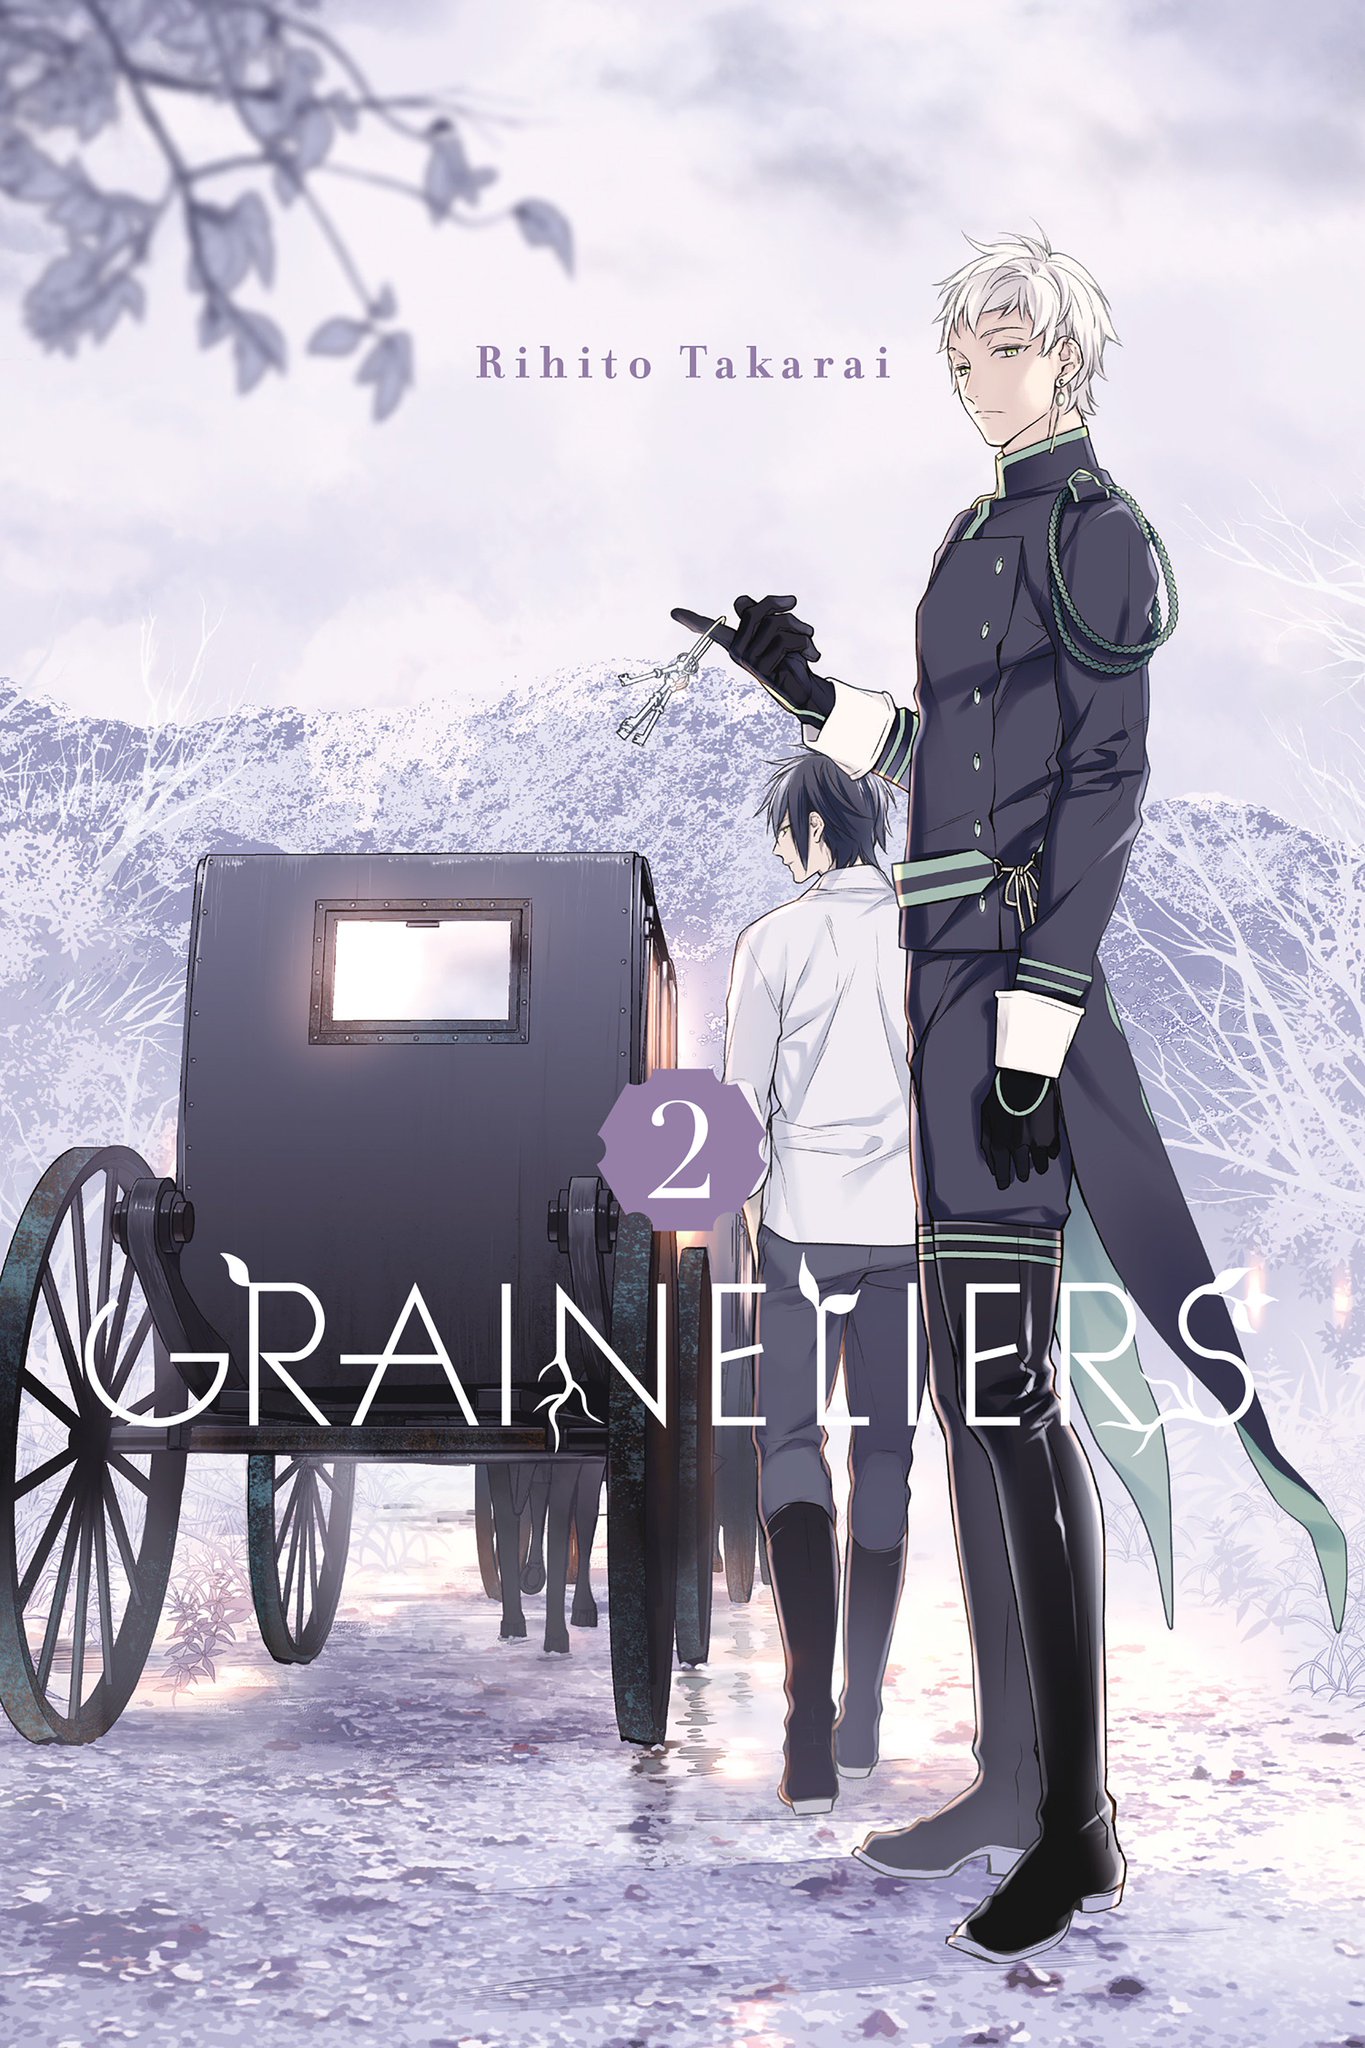 Graineliers - Volume 2 | Rihito Takarai